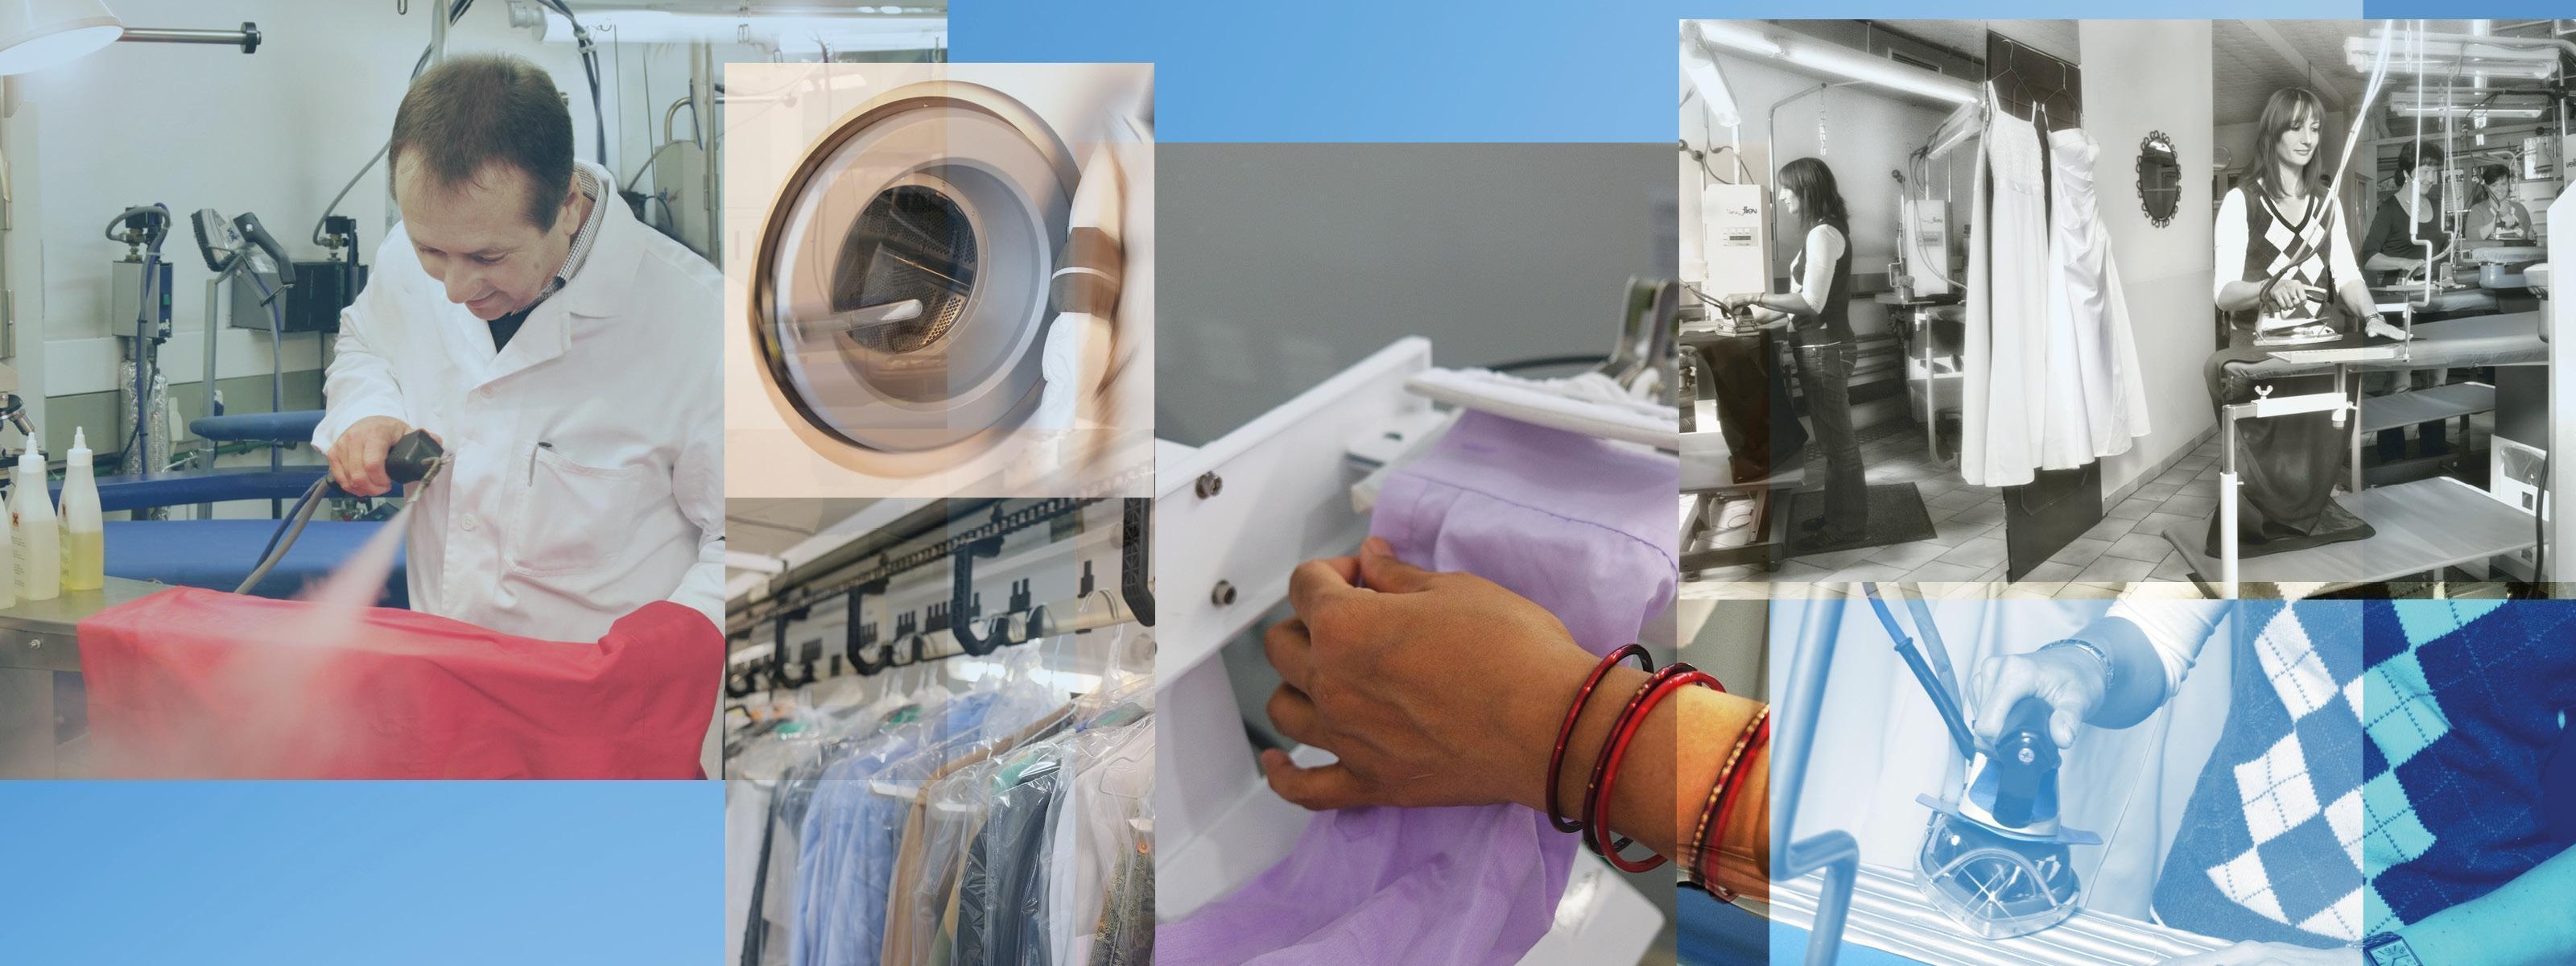 Collage aus verschiedenen Farb- und schwarz-weiß Bildern zum Thema Textilreinigung mit Personen, die in der Textilreinigung arbeiten, einer Waschmaschine, gereinigter Kleidung, einem Bügelbrett